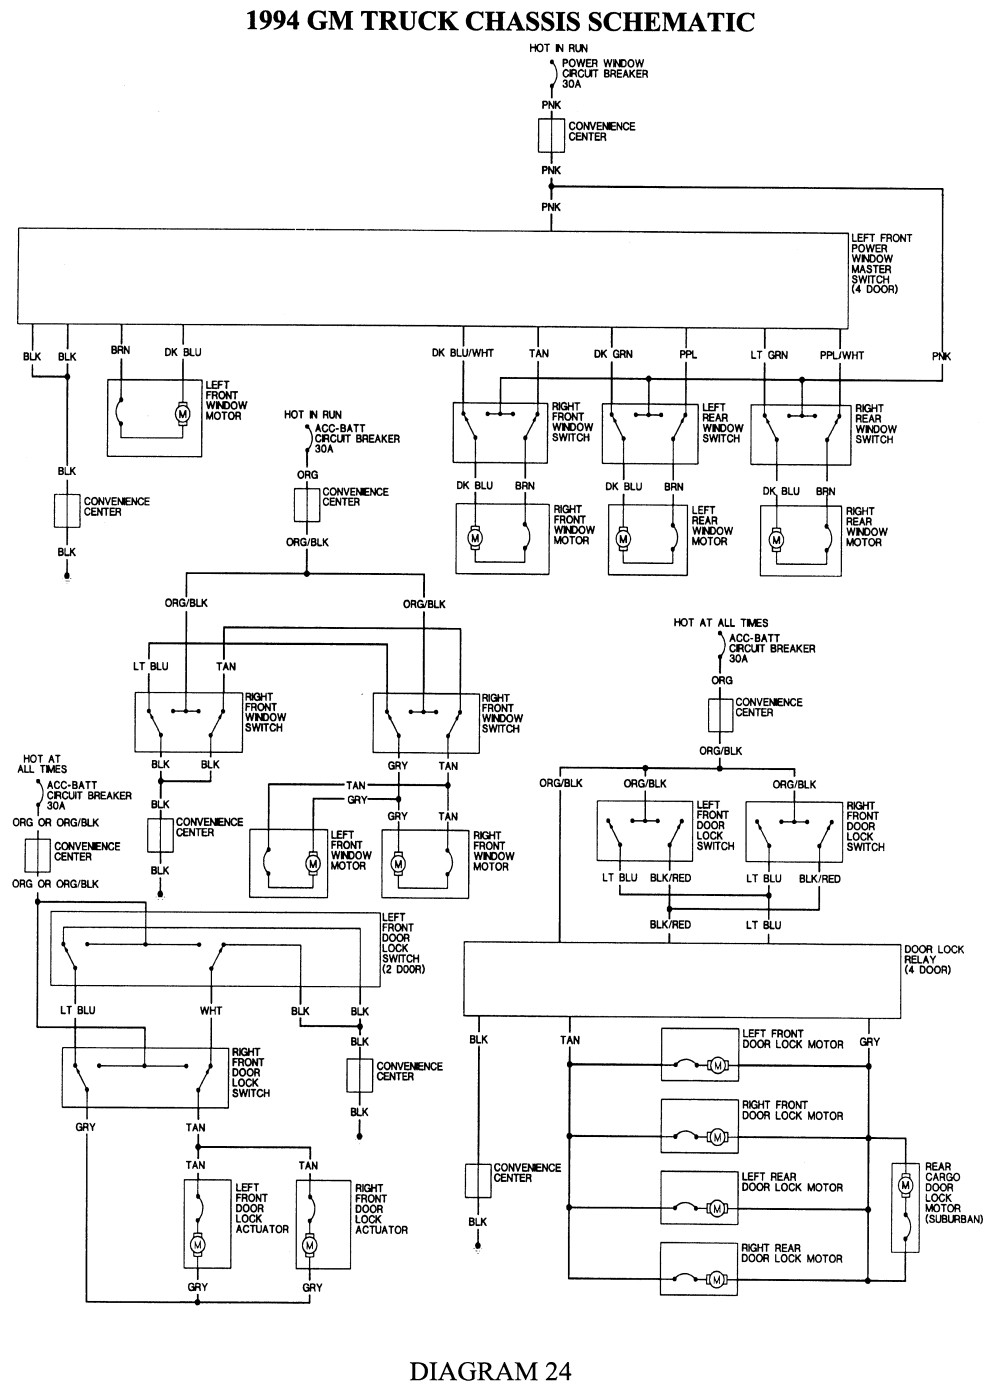 Repair Guides Wiring Diagrams Wiring Diagrams 87 S10 Wiring Diagram Pdf Wiring Auto Wiring Diagrams